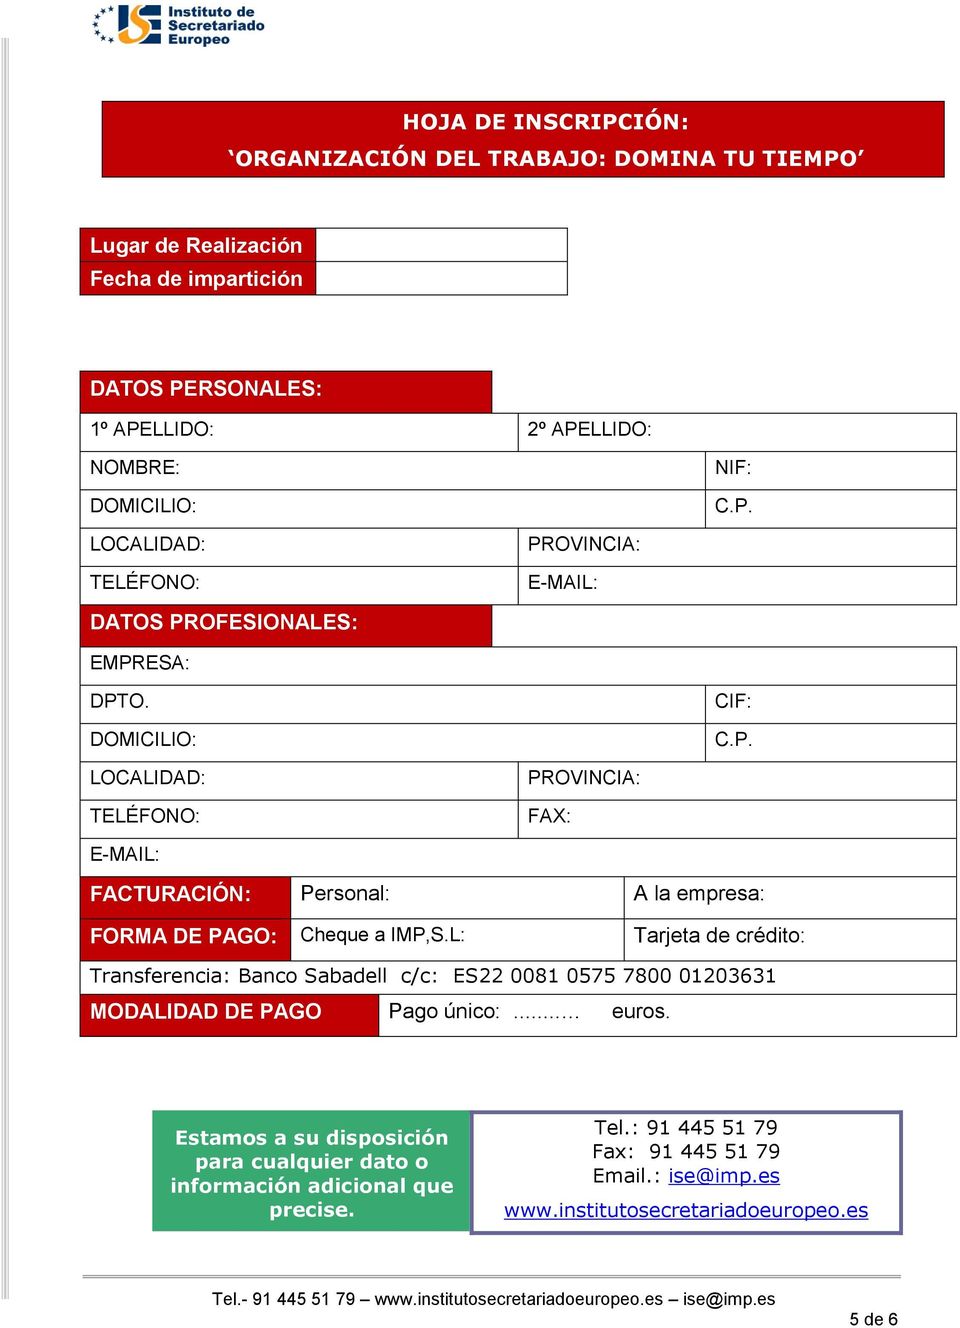 L: Tarjeta de crédito: Transferencia: Banco Sabadell c/c: ES22 0081 0575 7800 01203631 MODALIDAD DE PAGO Pago único:... euros.